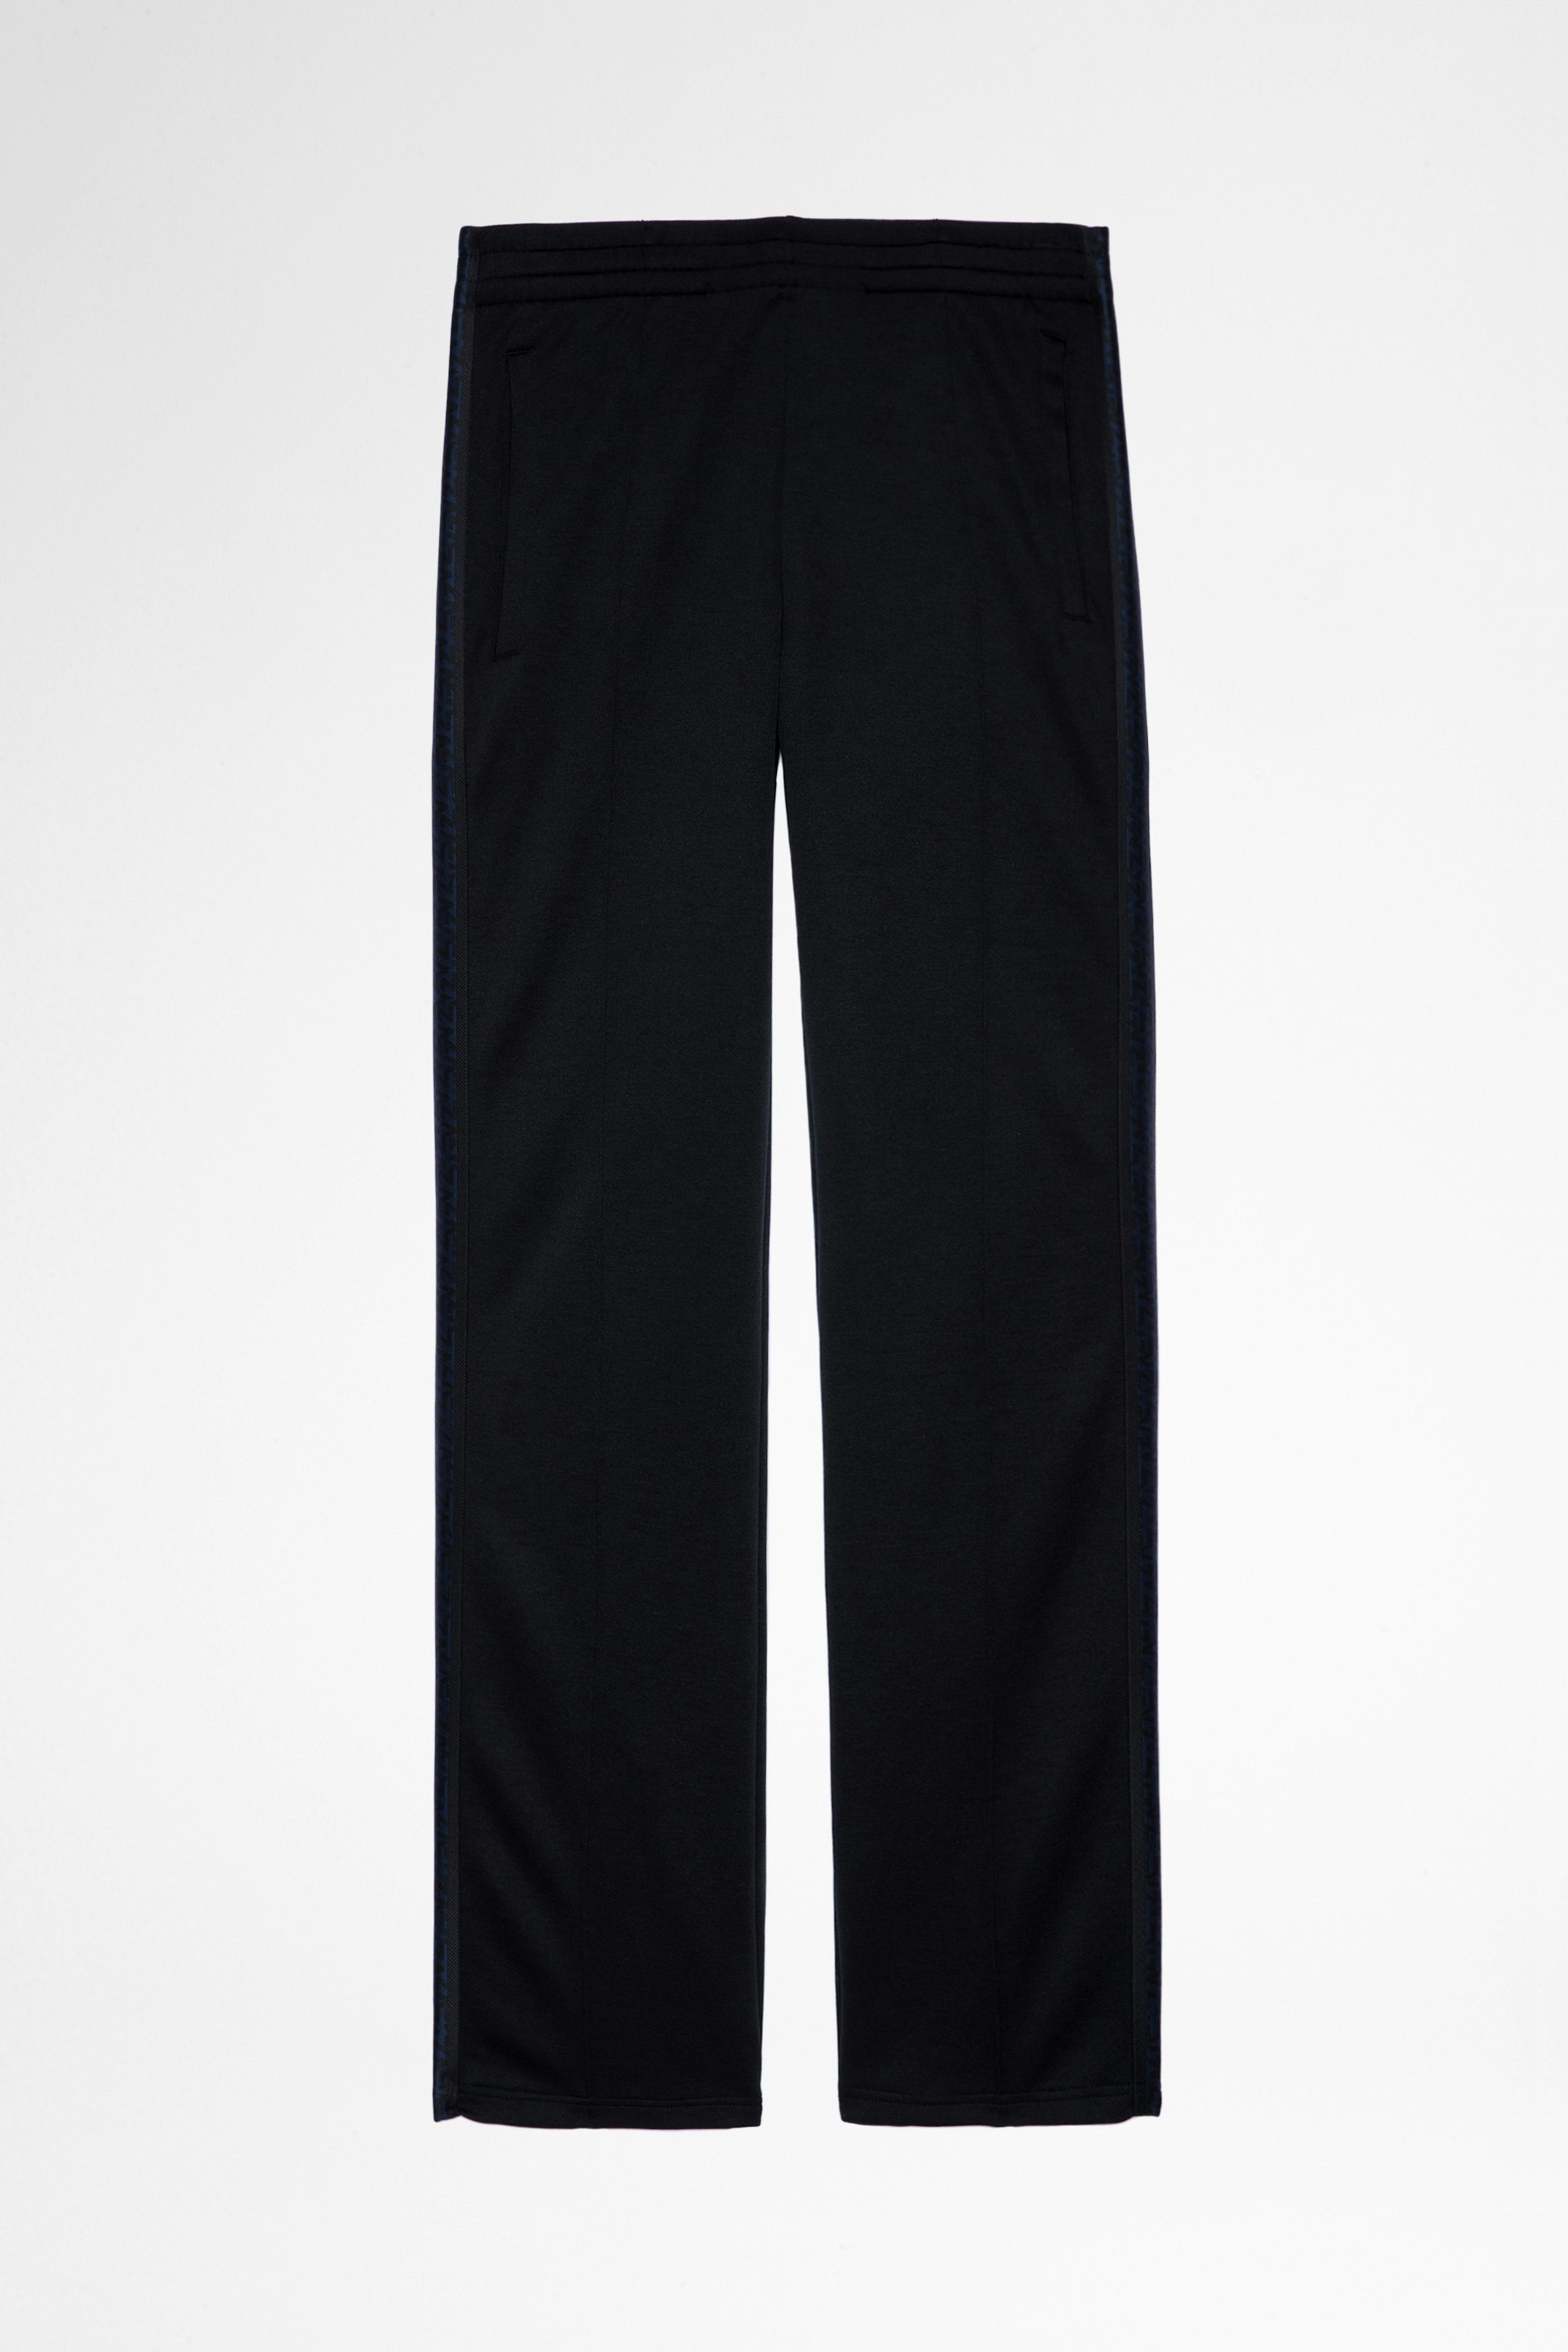 Pantaloni Chillyn Pantaloni svasati neri con bande laterali, uomo. Reallizzato con fibre da agricoltura biologica